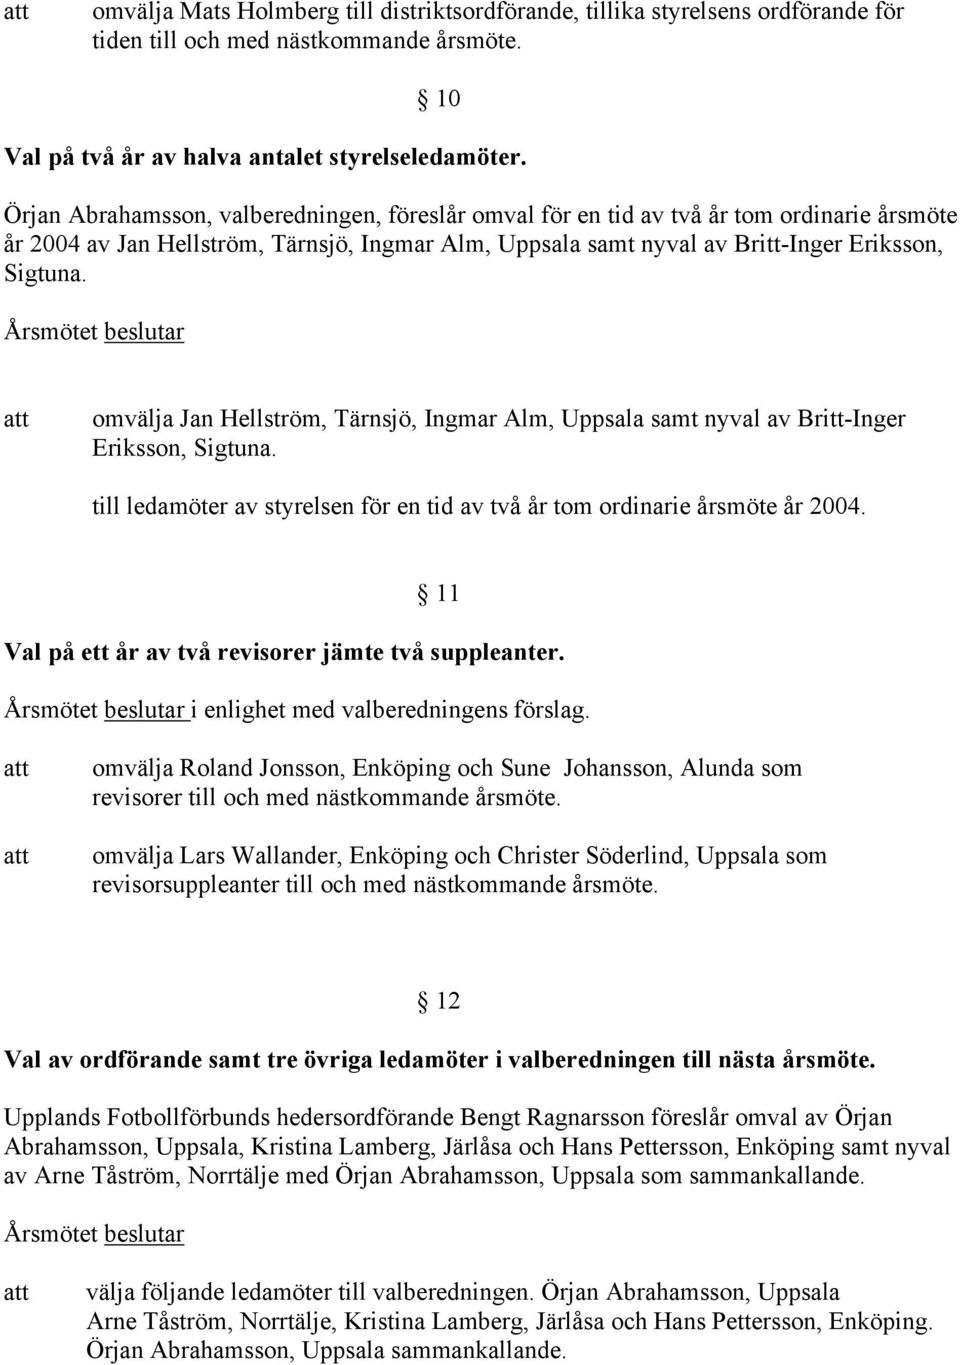 omvälja Jan Hellström, Tärnsjö, Ingmar Alm, Uppsala samt nyval av Britt-Inger Eriksson, Sigtuna. till ledamöter av styrelsen för en tid av två år tom ordinarie årsmöte år 2004.